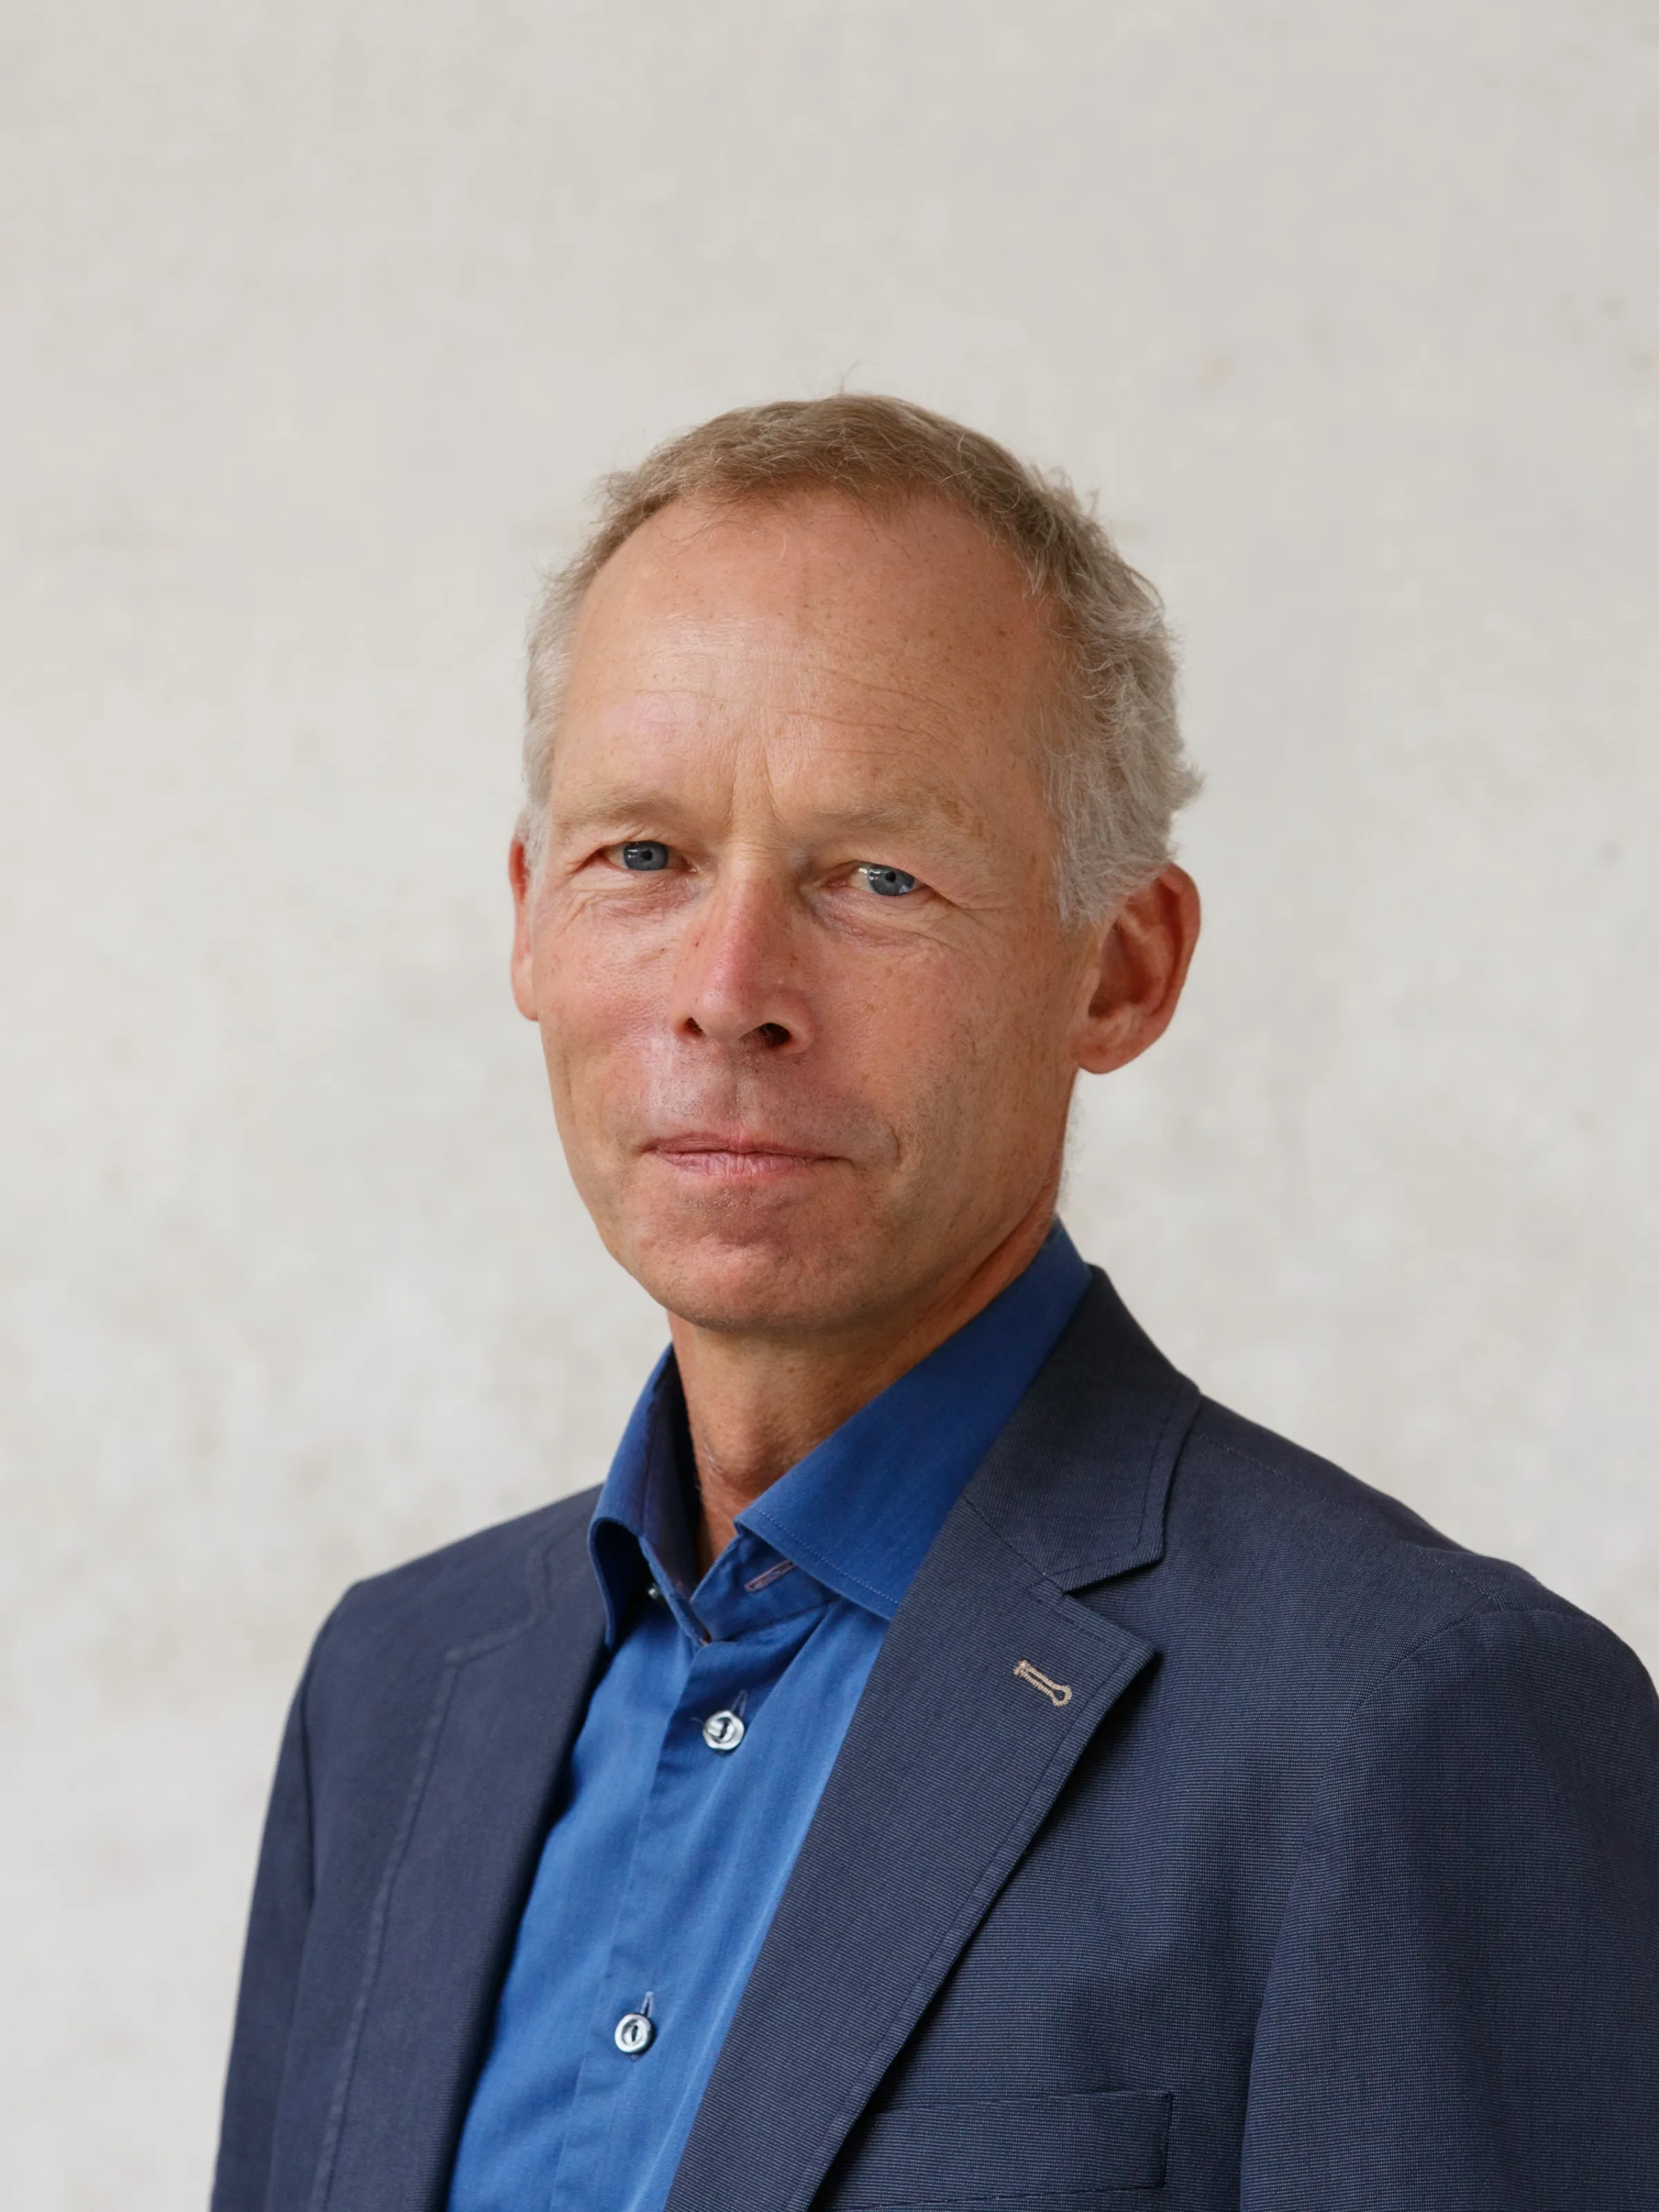 Johan Rockström profile picture